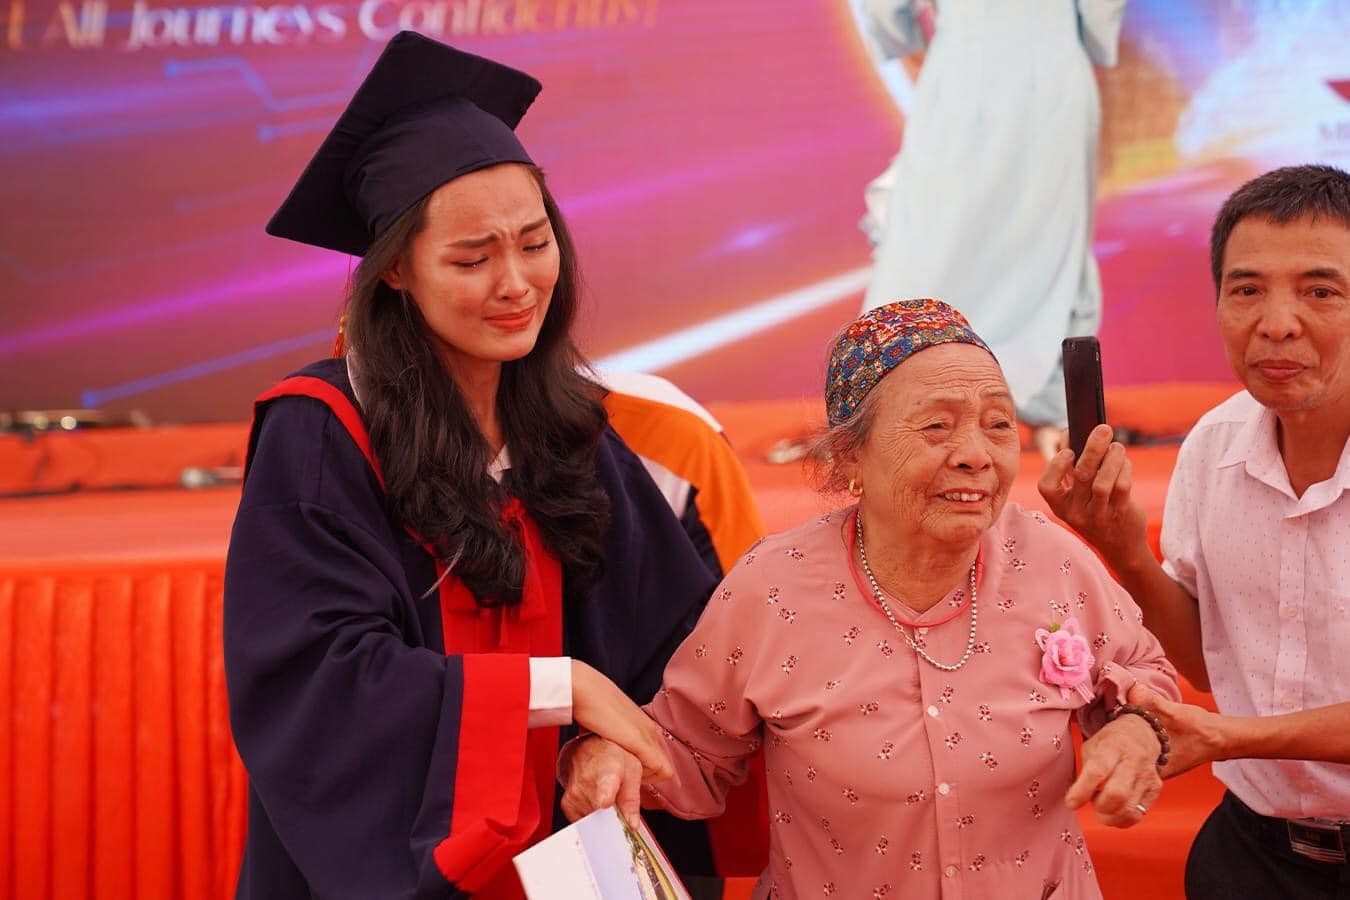 Câu chuyện xúc động bà nội 83 tuổi vượt gần 2000km dự lễ tốt nghiệp đại học của cháu gái - ảnh 1